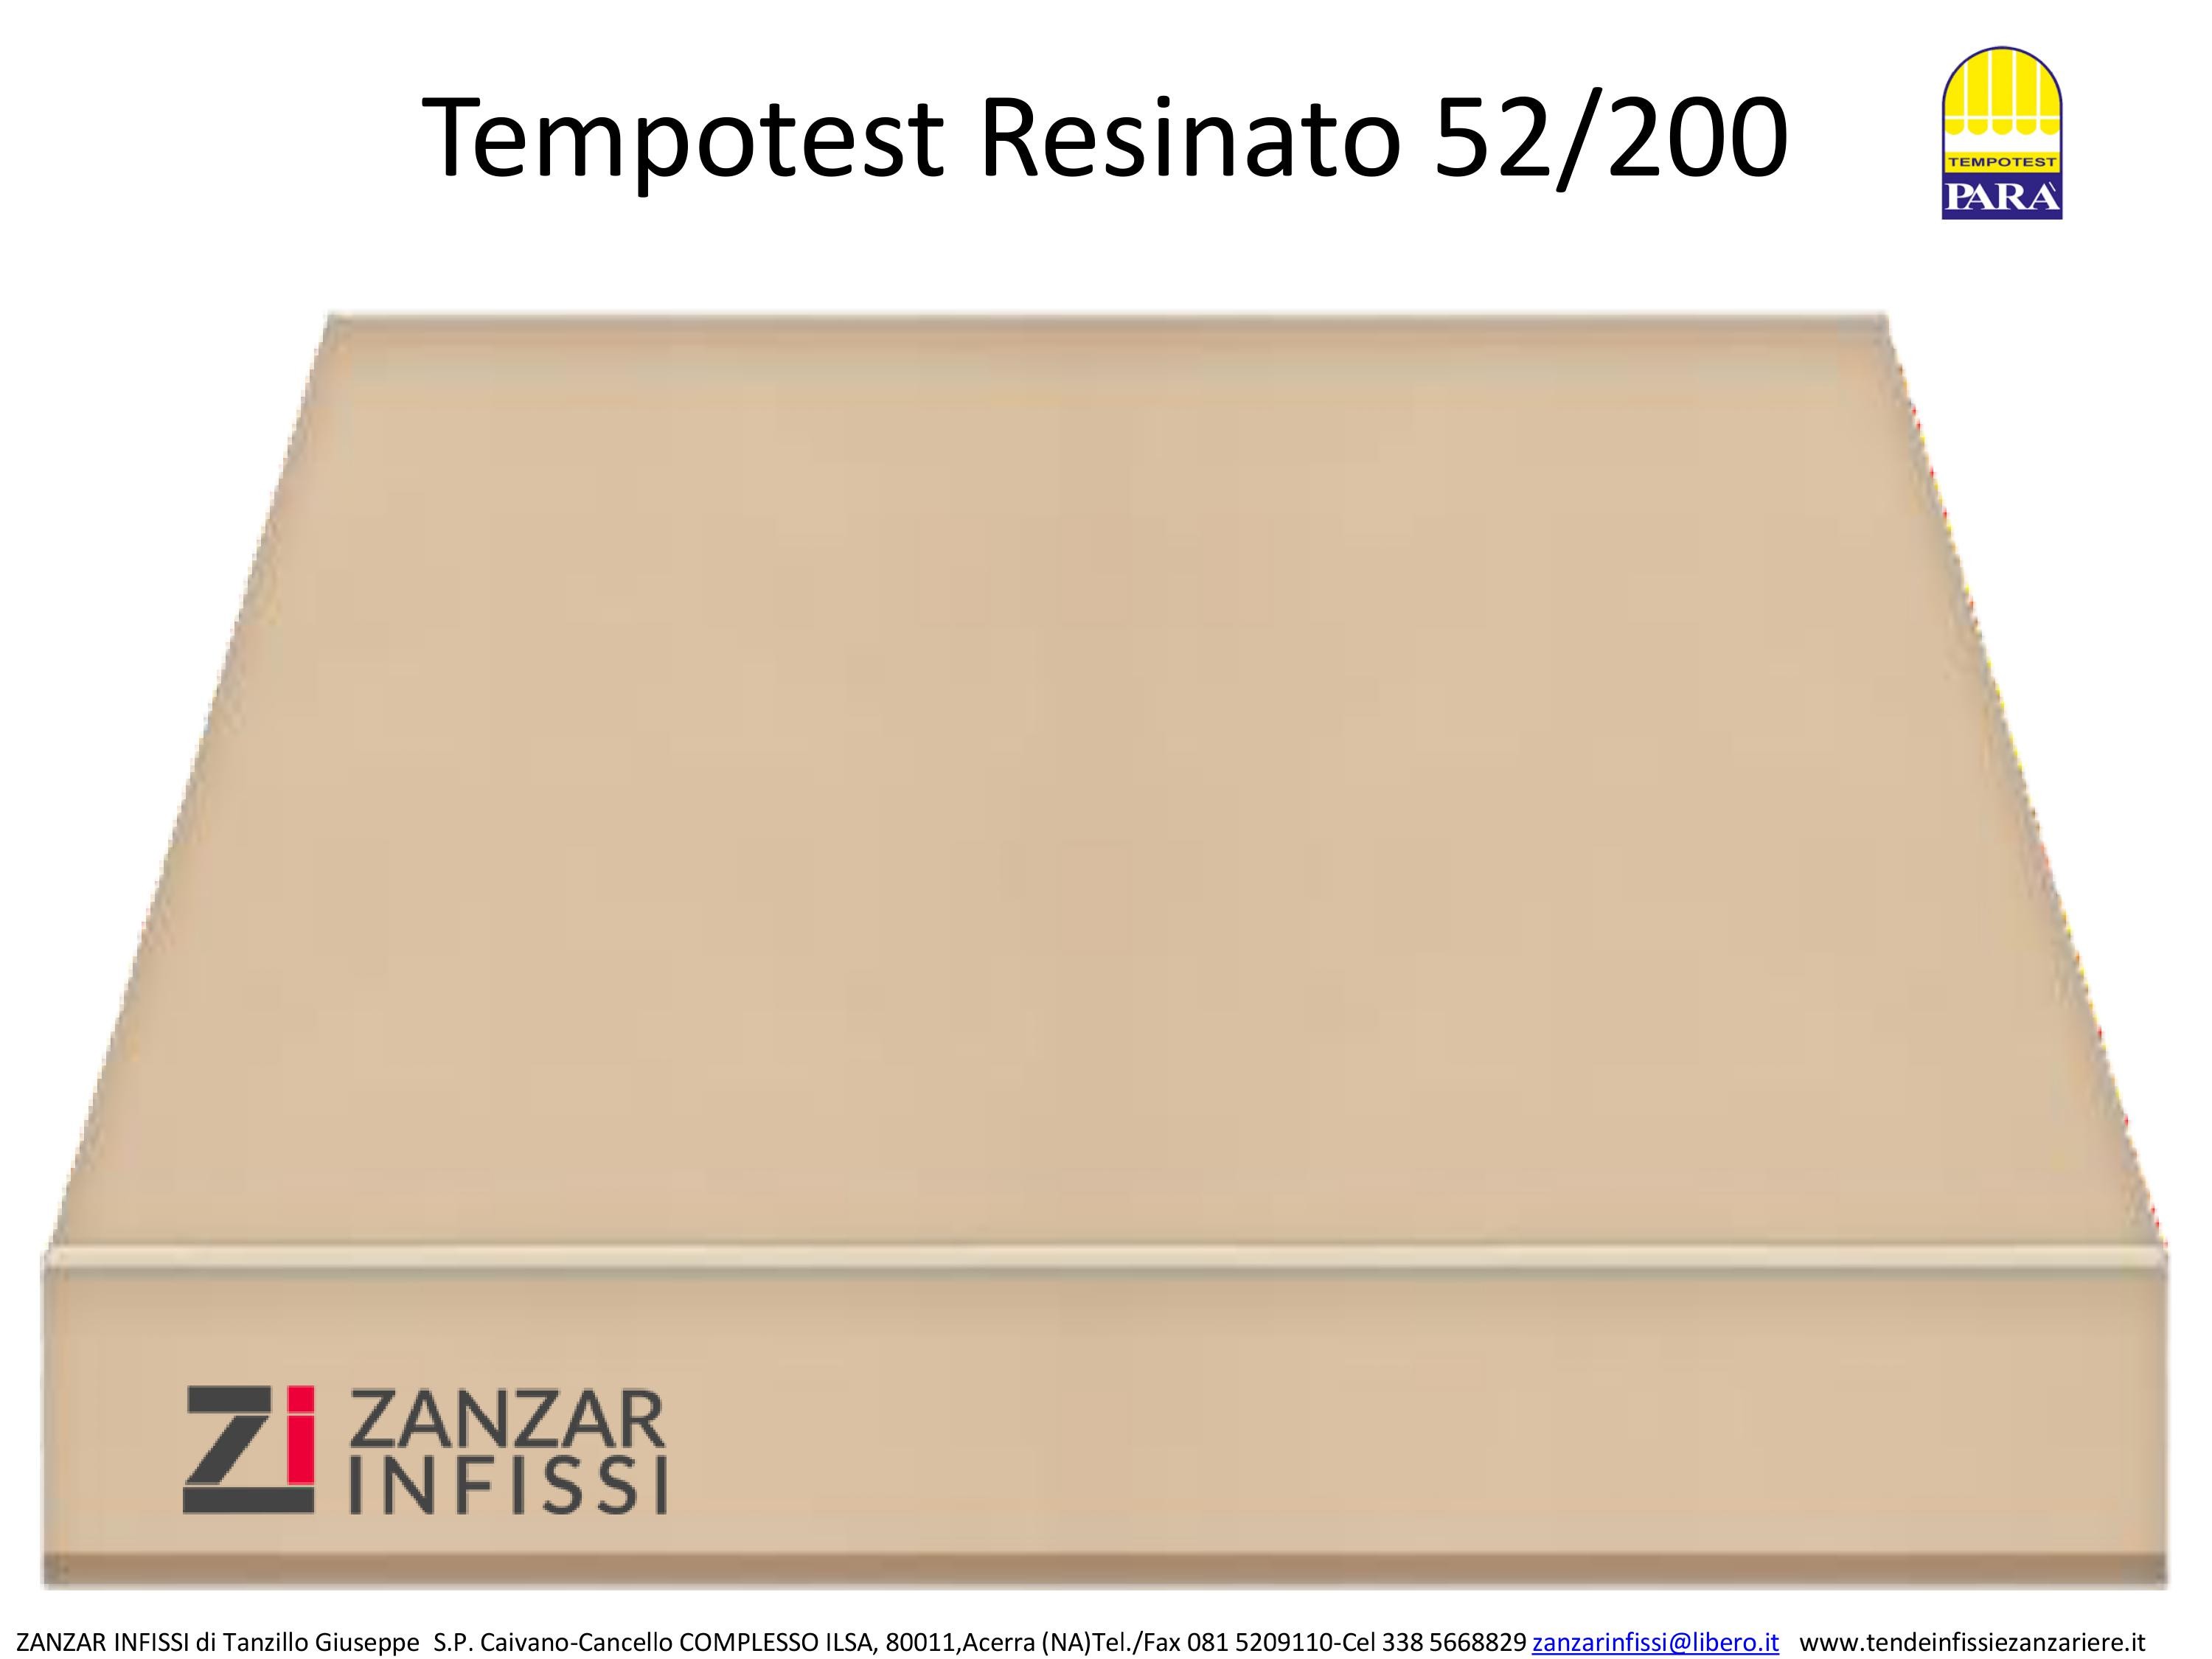 Tempotest resinato 52/200